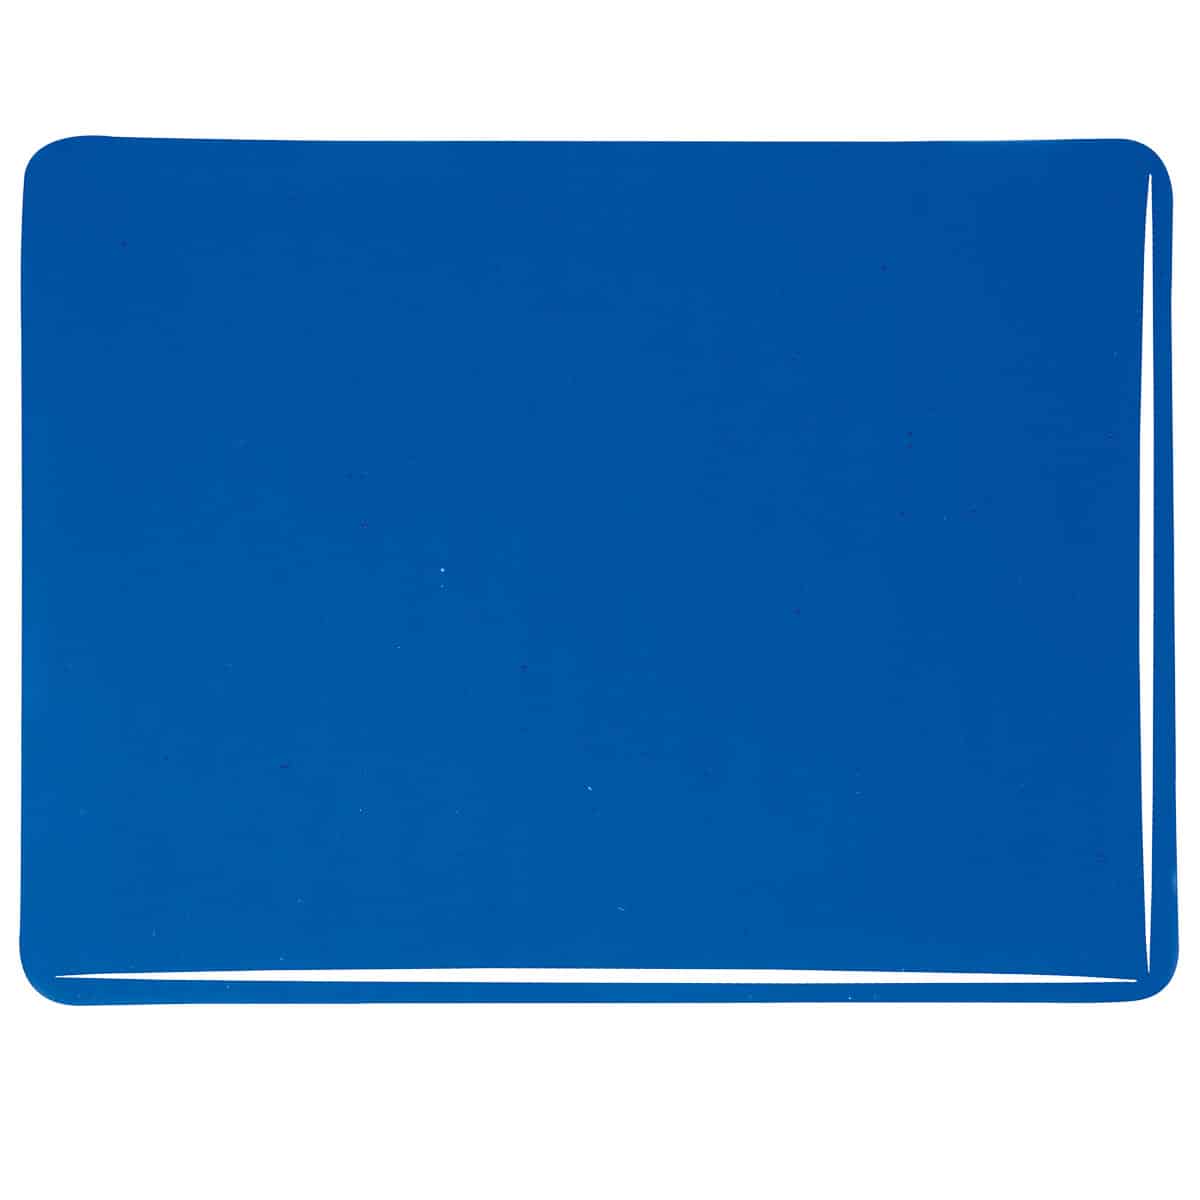 001164 Transparent Caribbean Blue sheet glass swatch